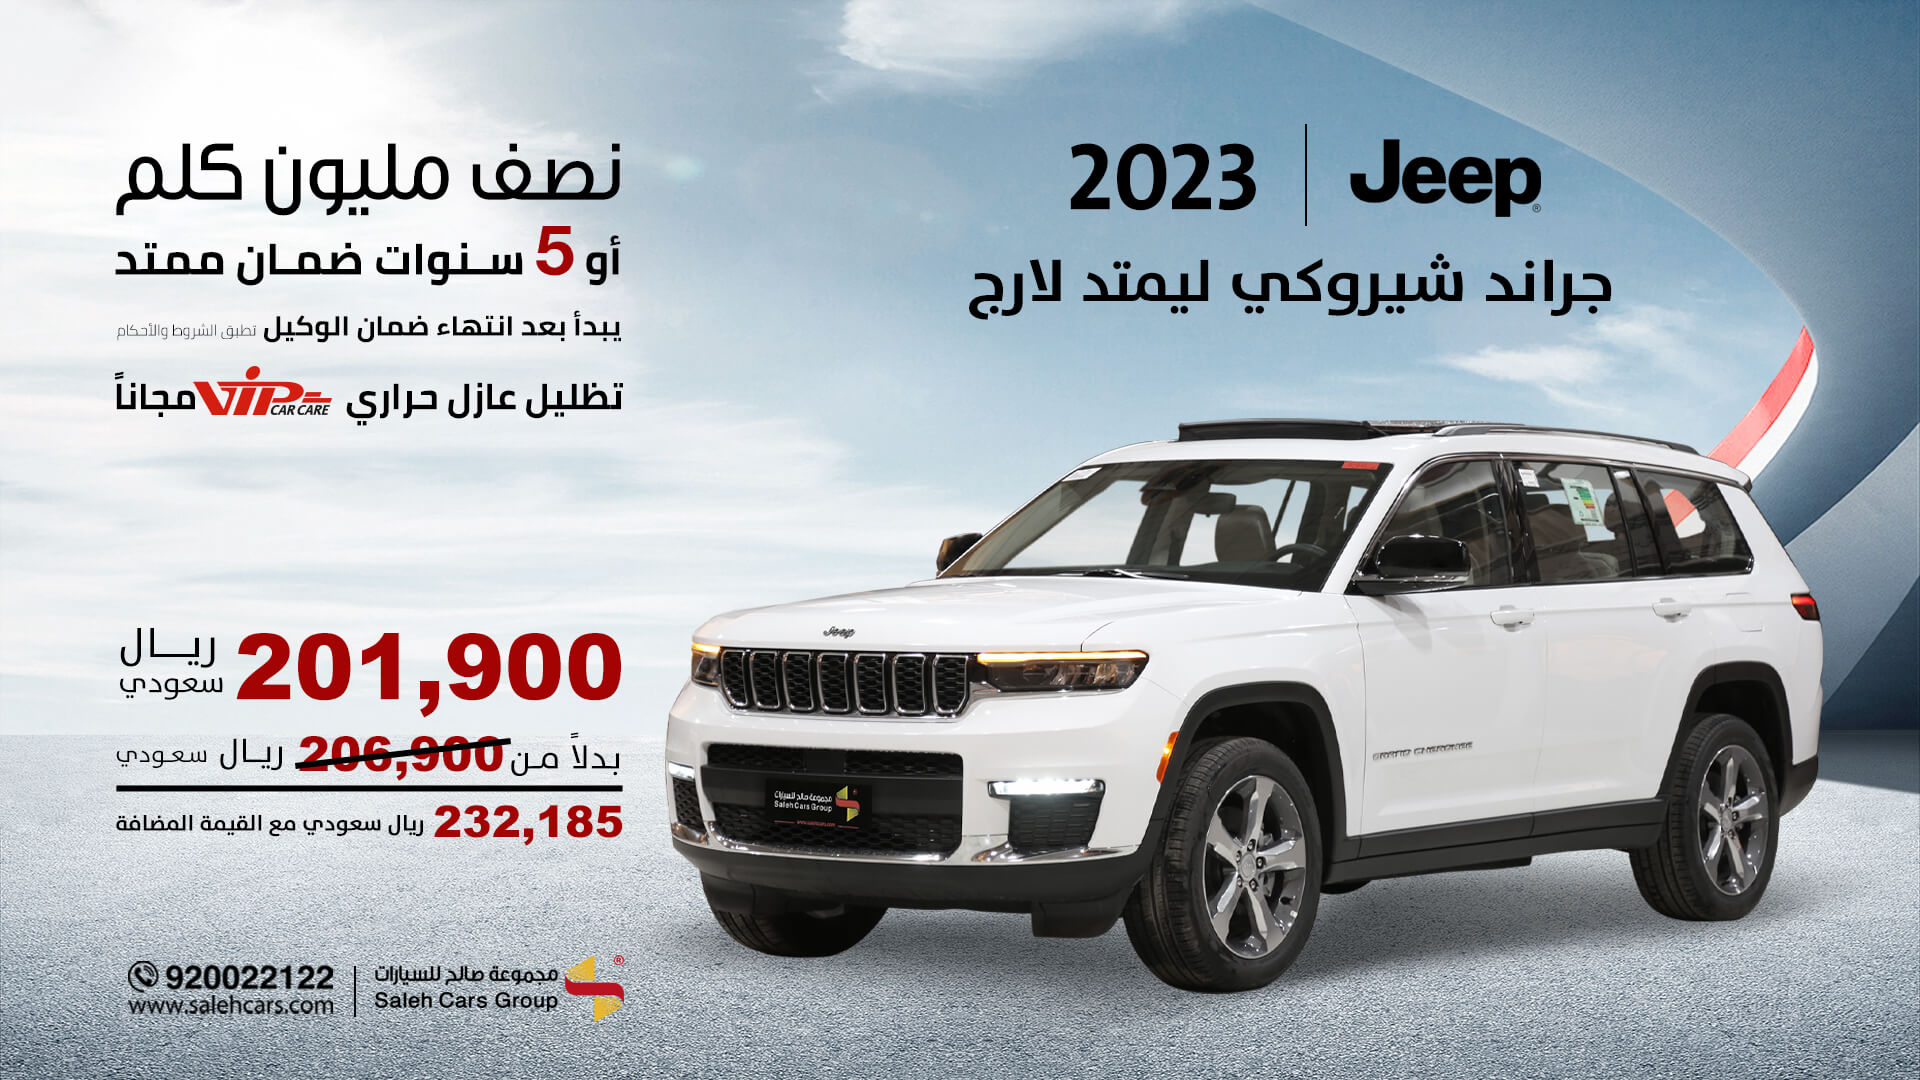 عروض Saleh Cars سيارة جراند شيروكي ليمتد End of year 2023